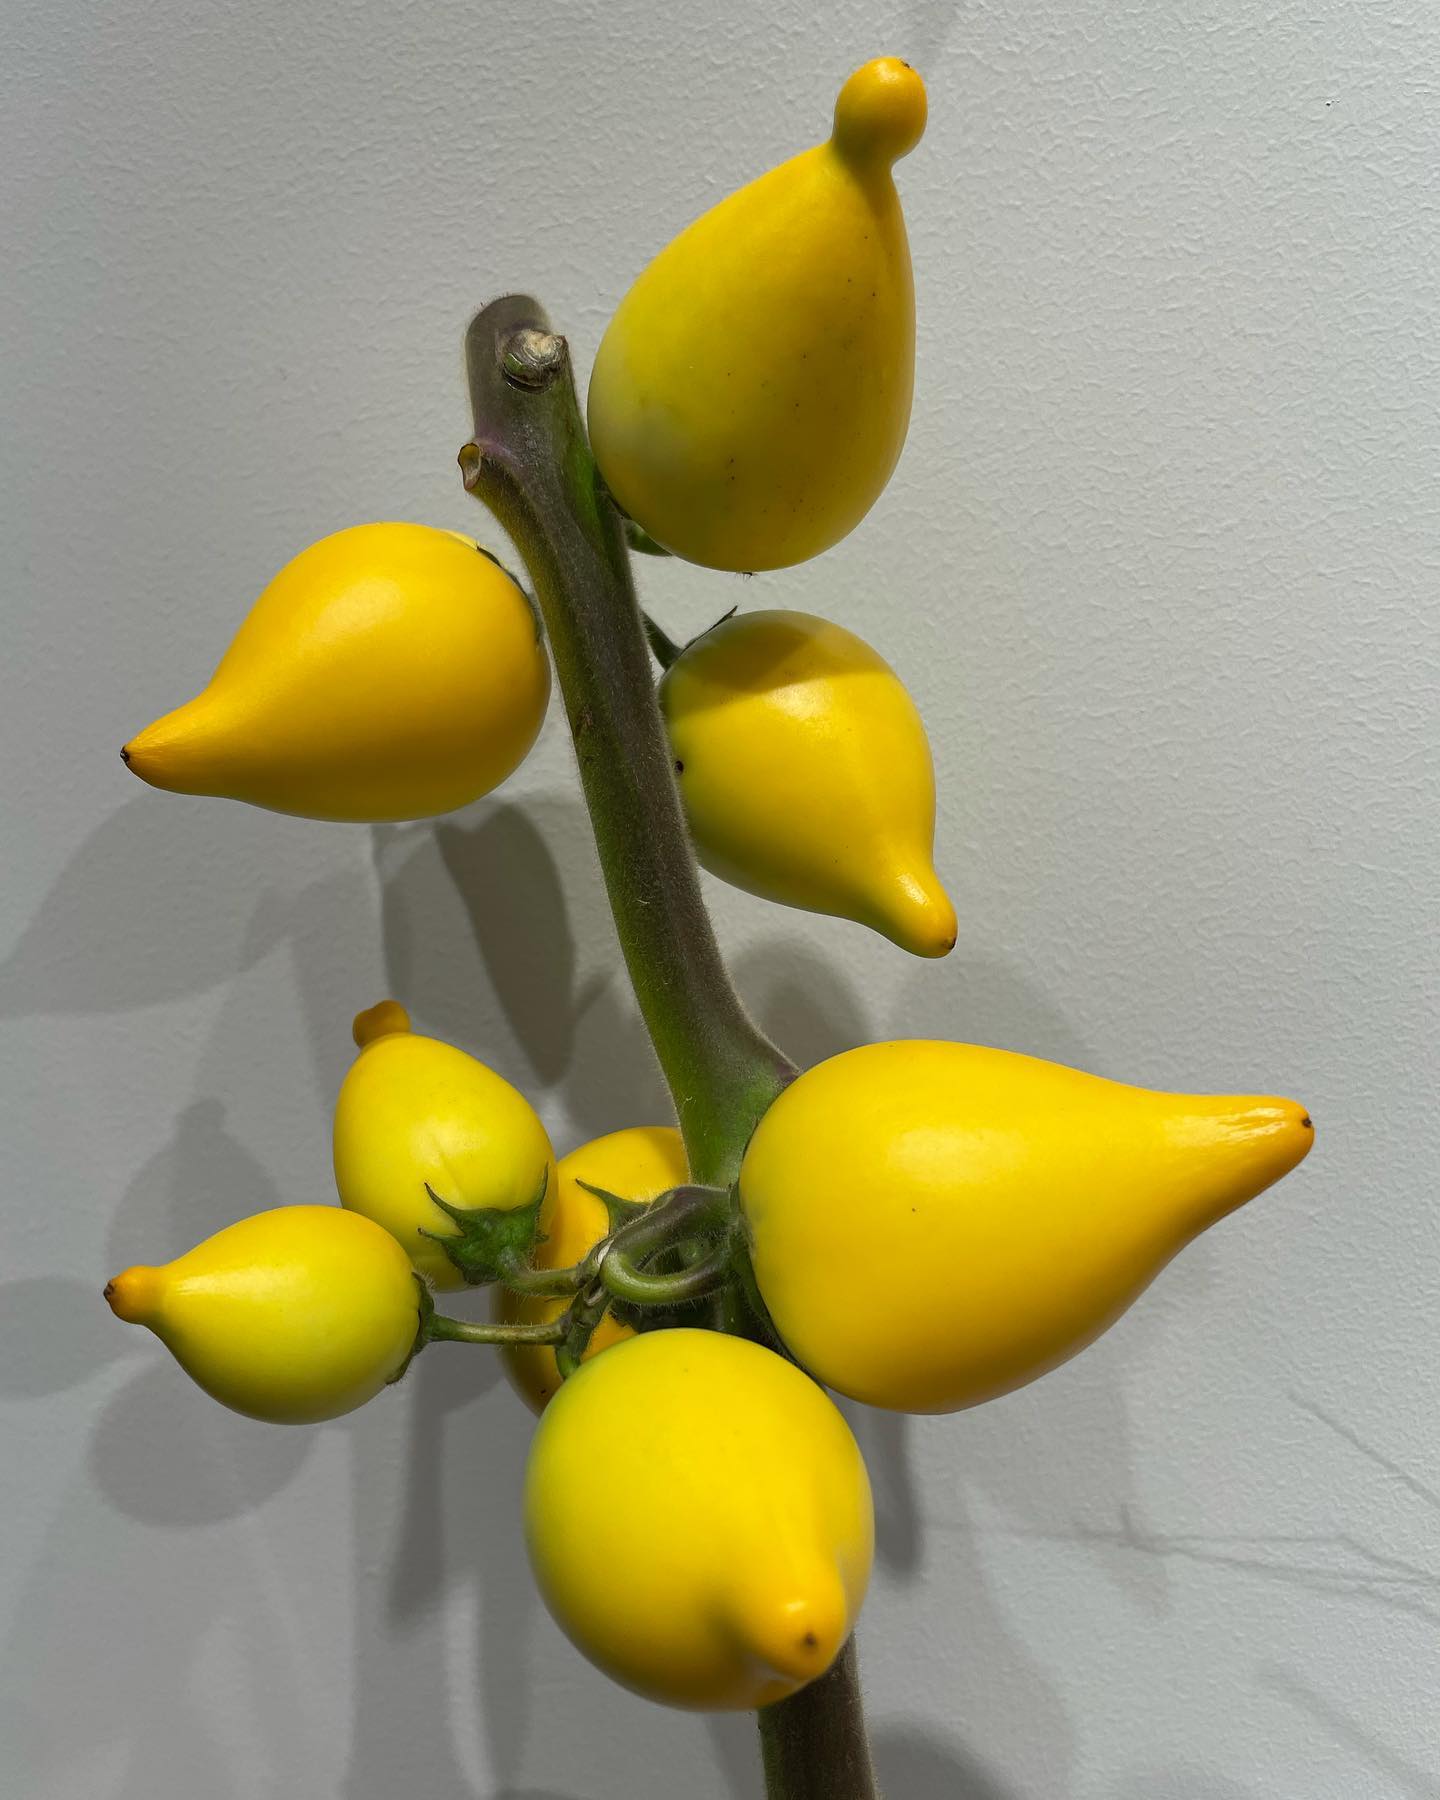 モンソーフルール新宿アルタ店です！！

フォックスフェイス入荷しました

黄色の果実がキツネの顔に似ていることからフォックスフェイスと呼ばれるようになったみたいです🦊

果実だけ切り離して、インテリアとして飾ることも可能な為、お家に飾ってみてはどうですか？️